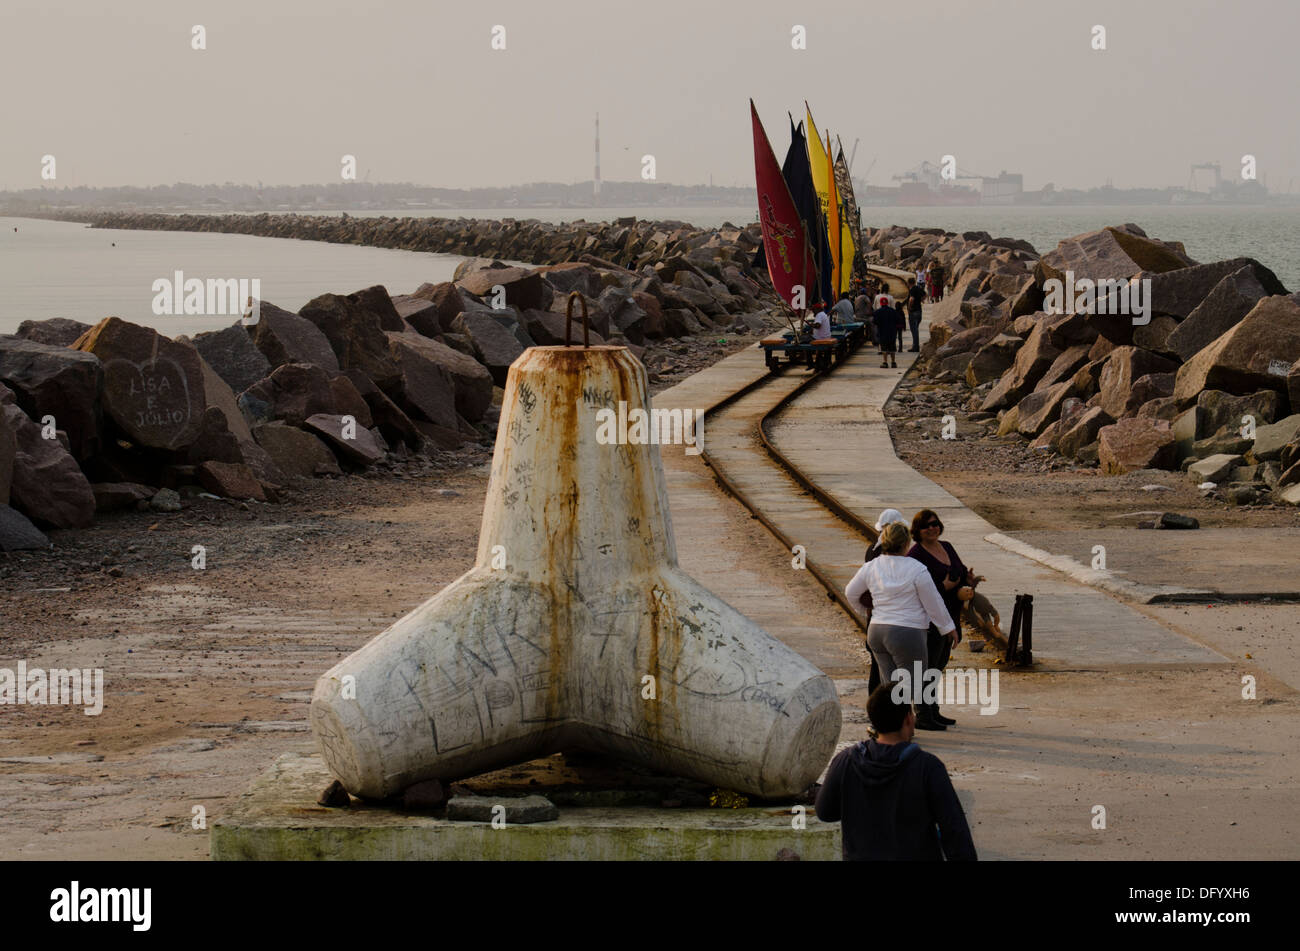 Wellenbrecher Pier Schiene Weg mit Segel Wagen am Rio Grande, Rio Grande do Sul, Brasilien Stockfoto